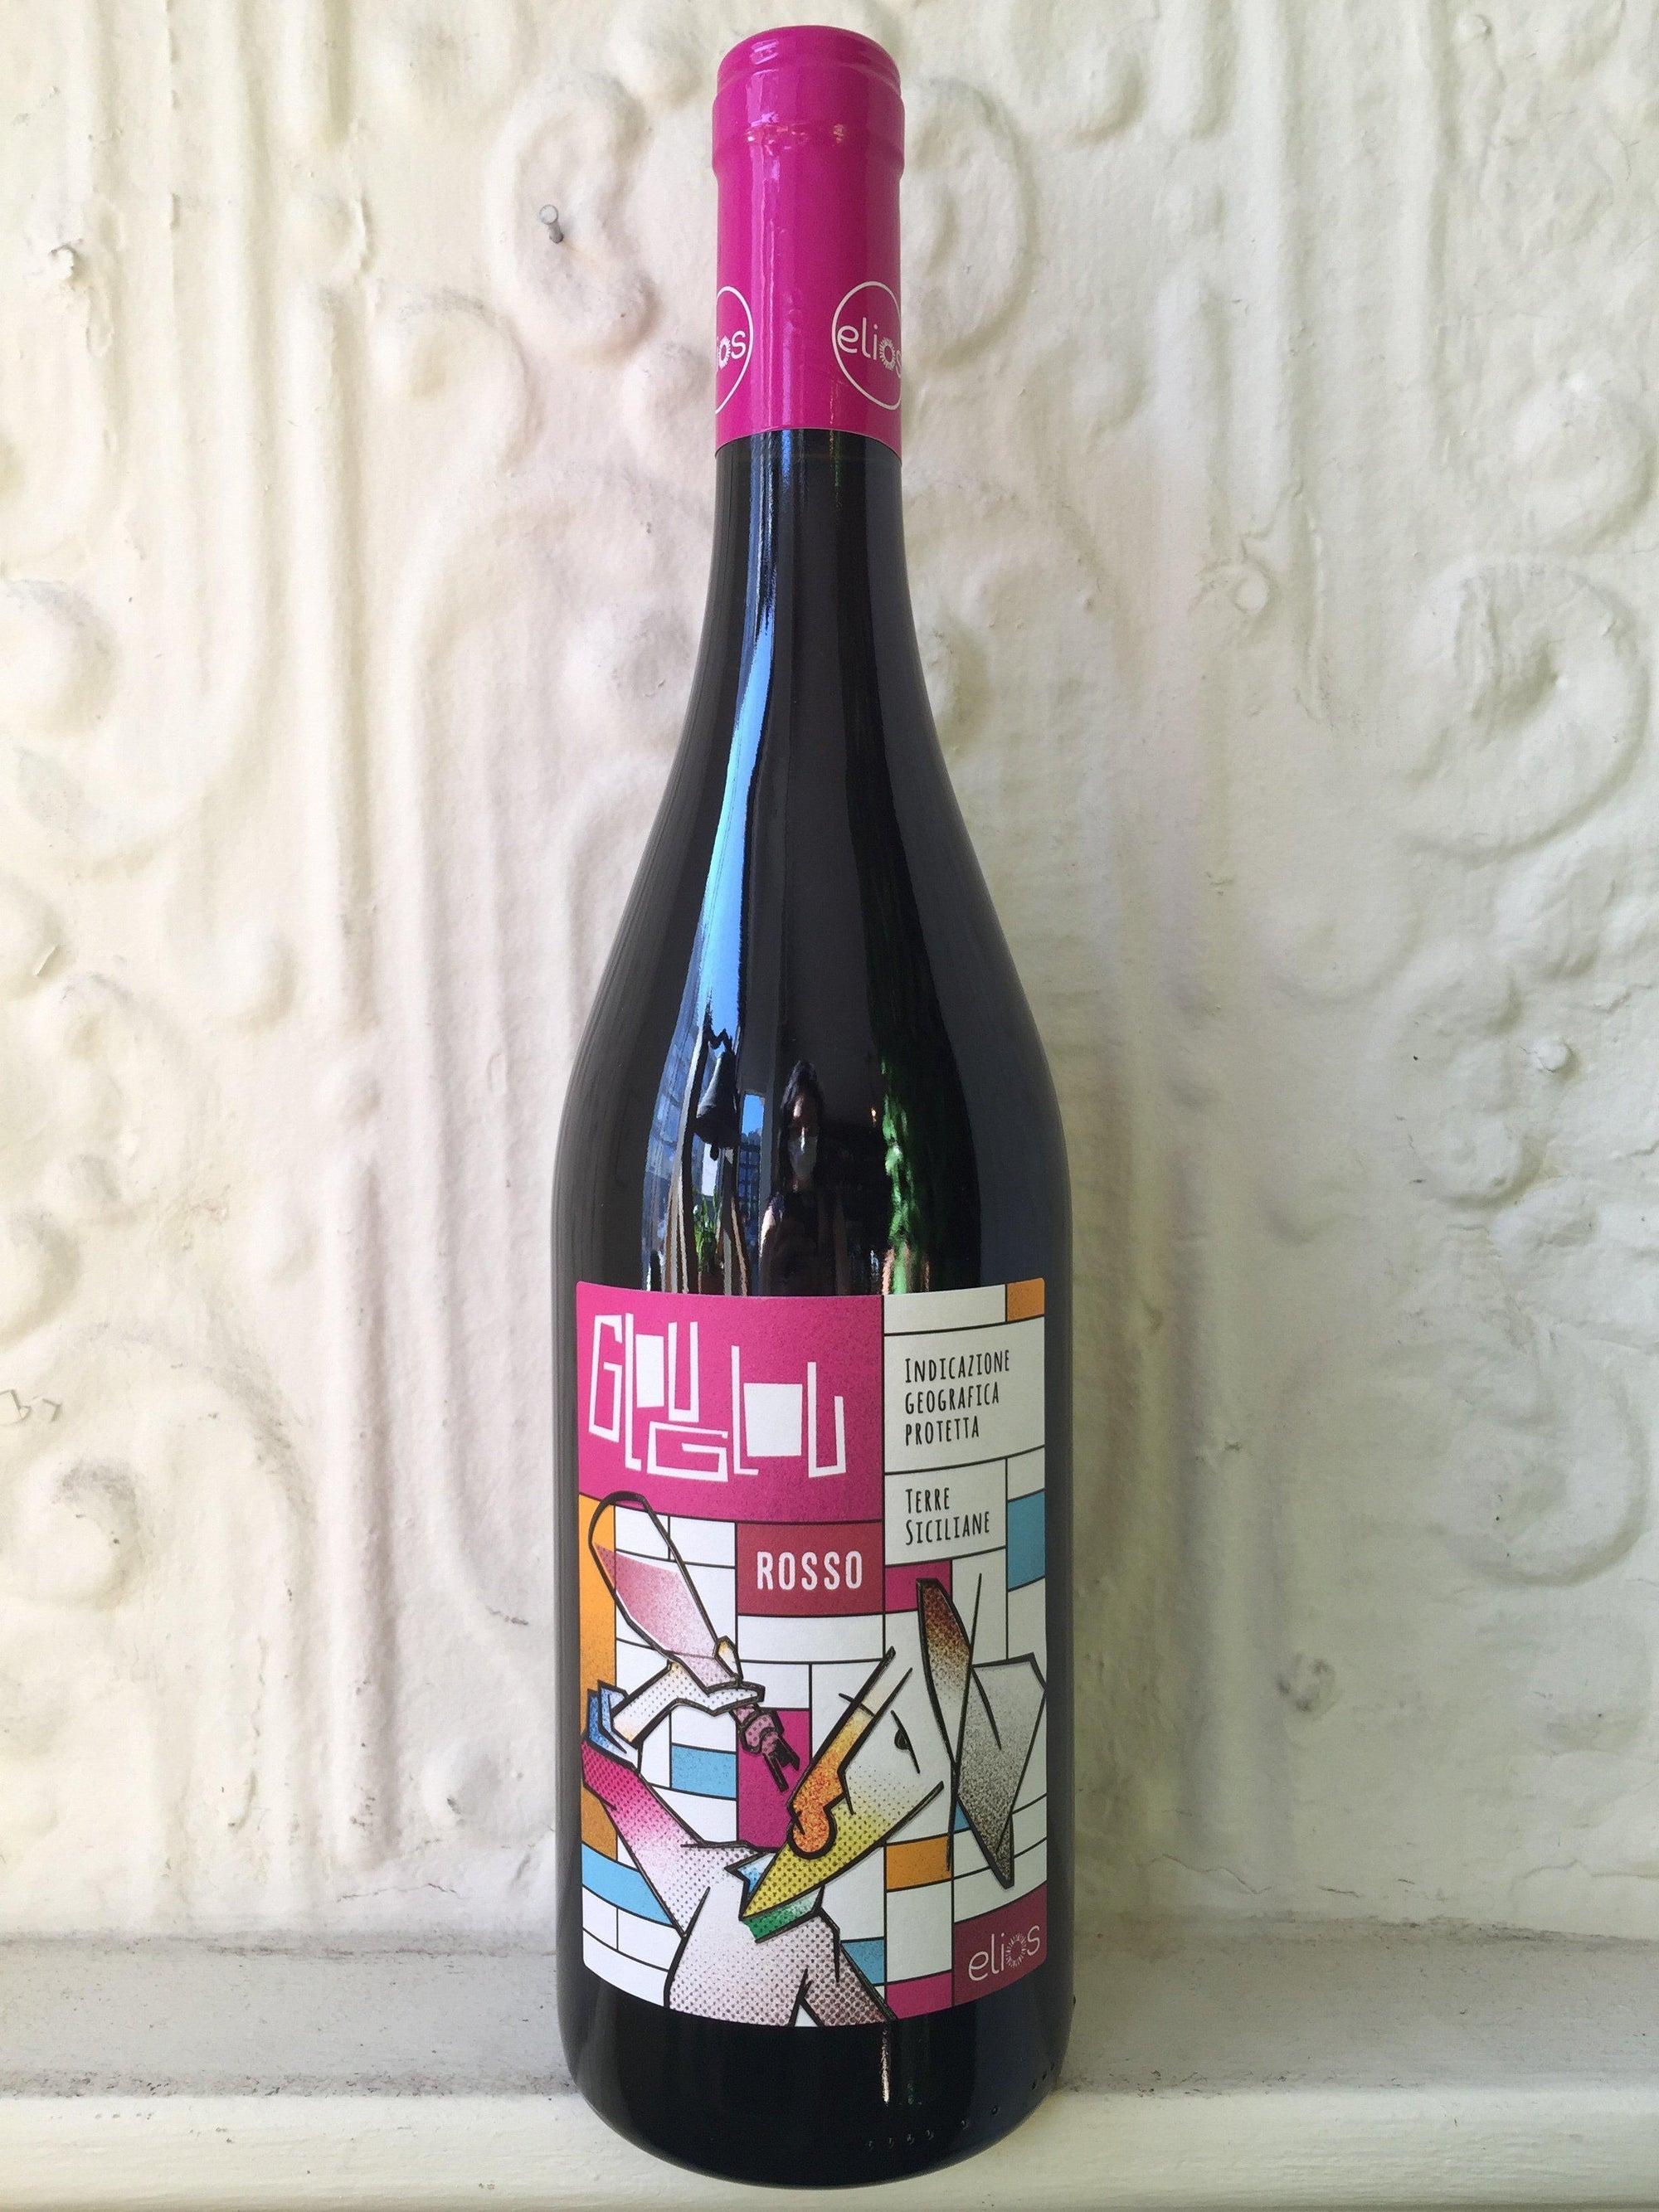 Nerello Mascalese "Glou Glou", Elios 2019 (Sicily, Italy)-Wine-Bibber & Bell